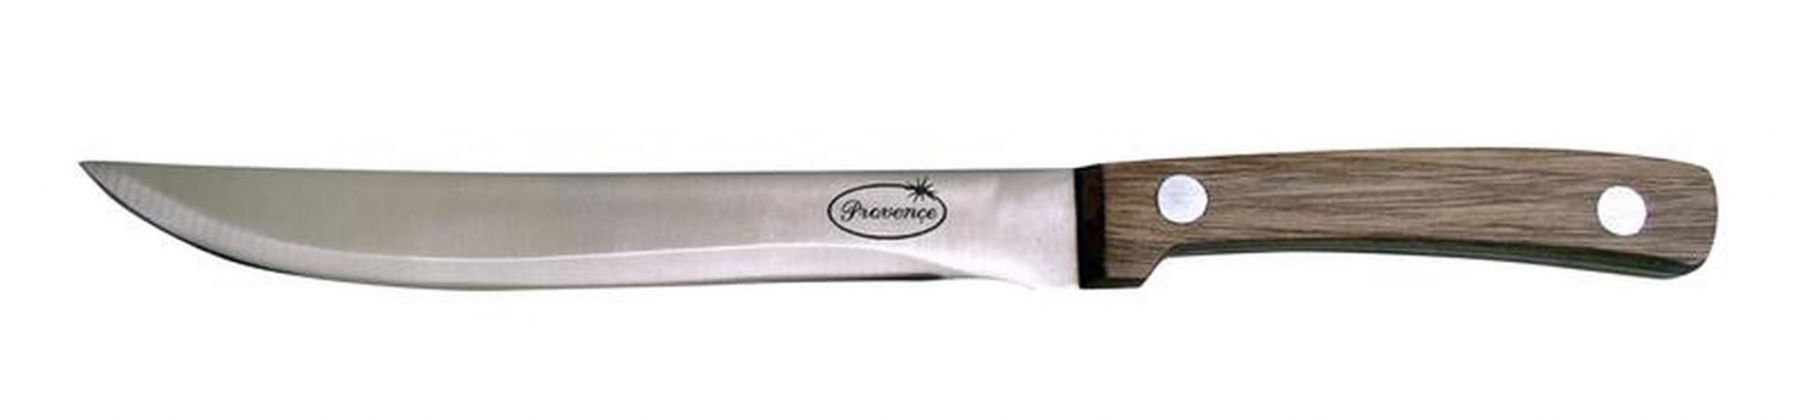 Porcovací nůž Provence Wood 18,5cm - Kitos.cz